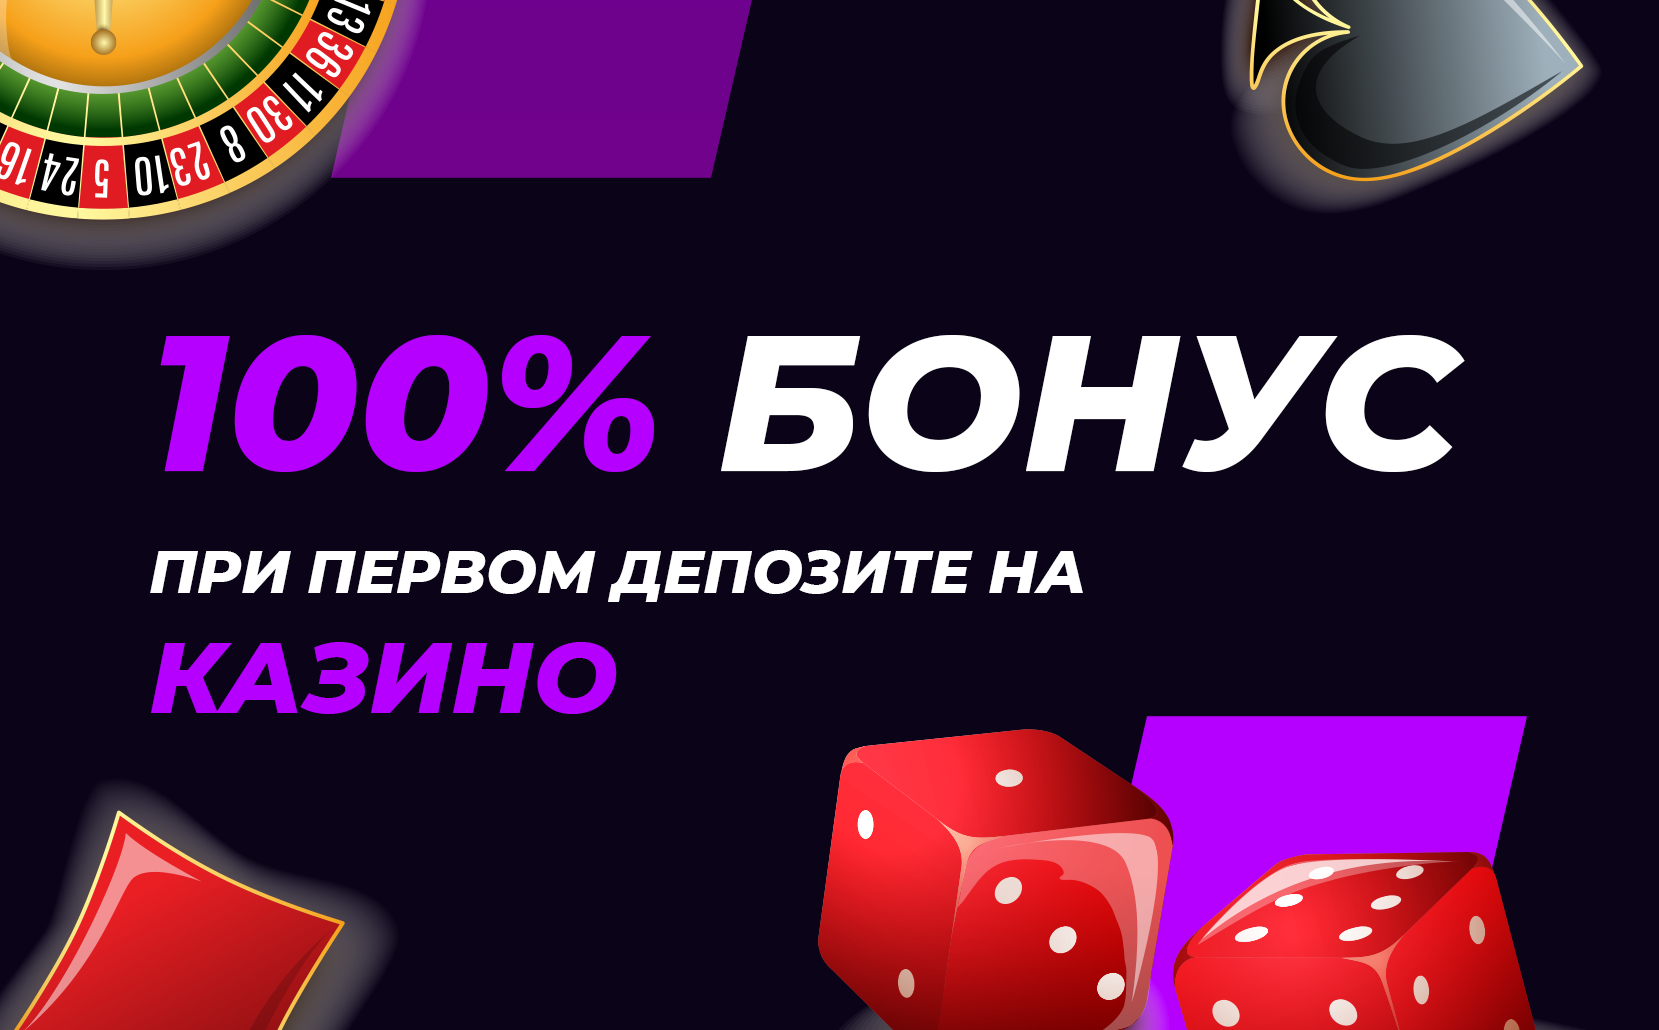 100 casino deposit bonus